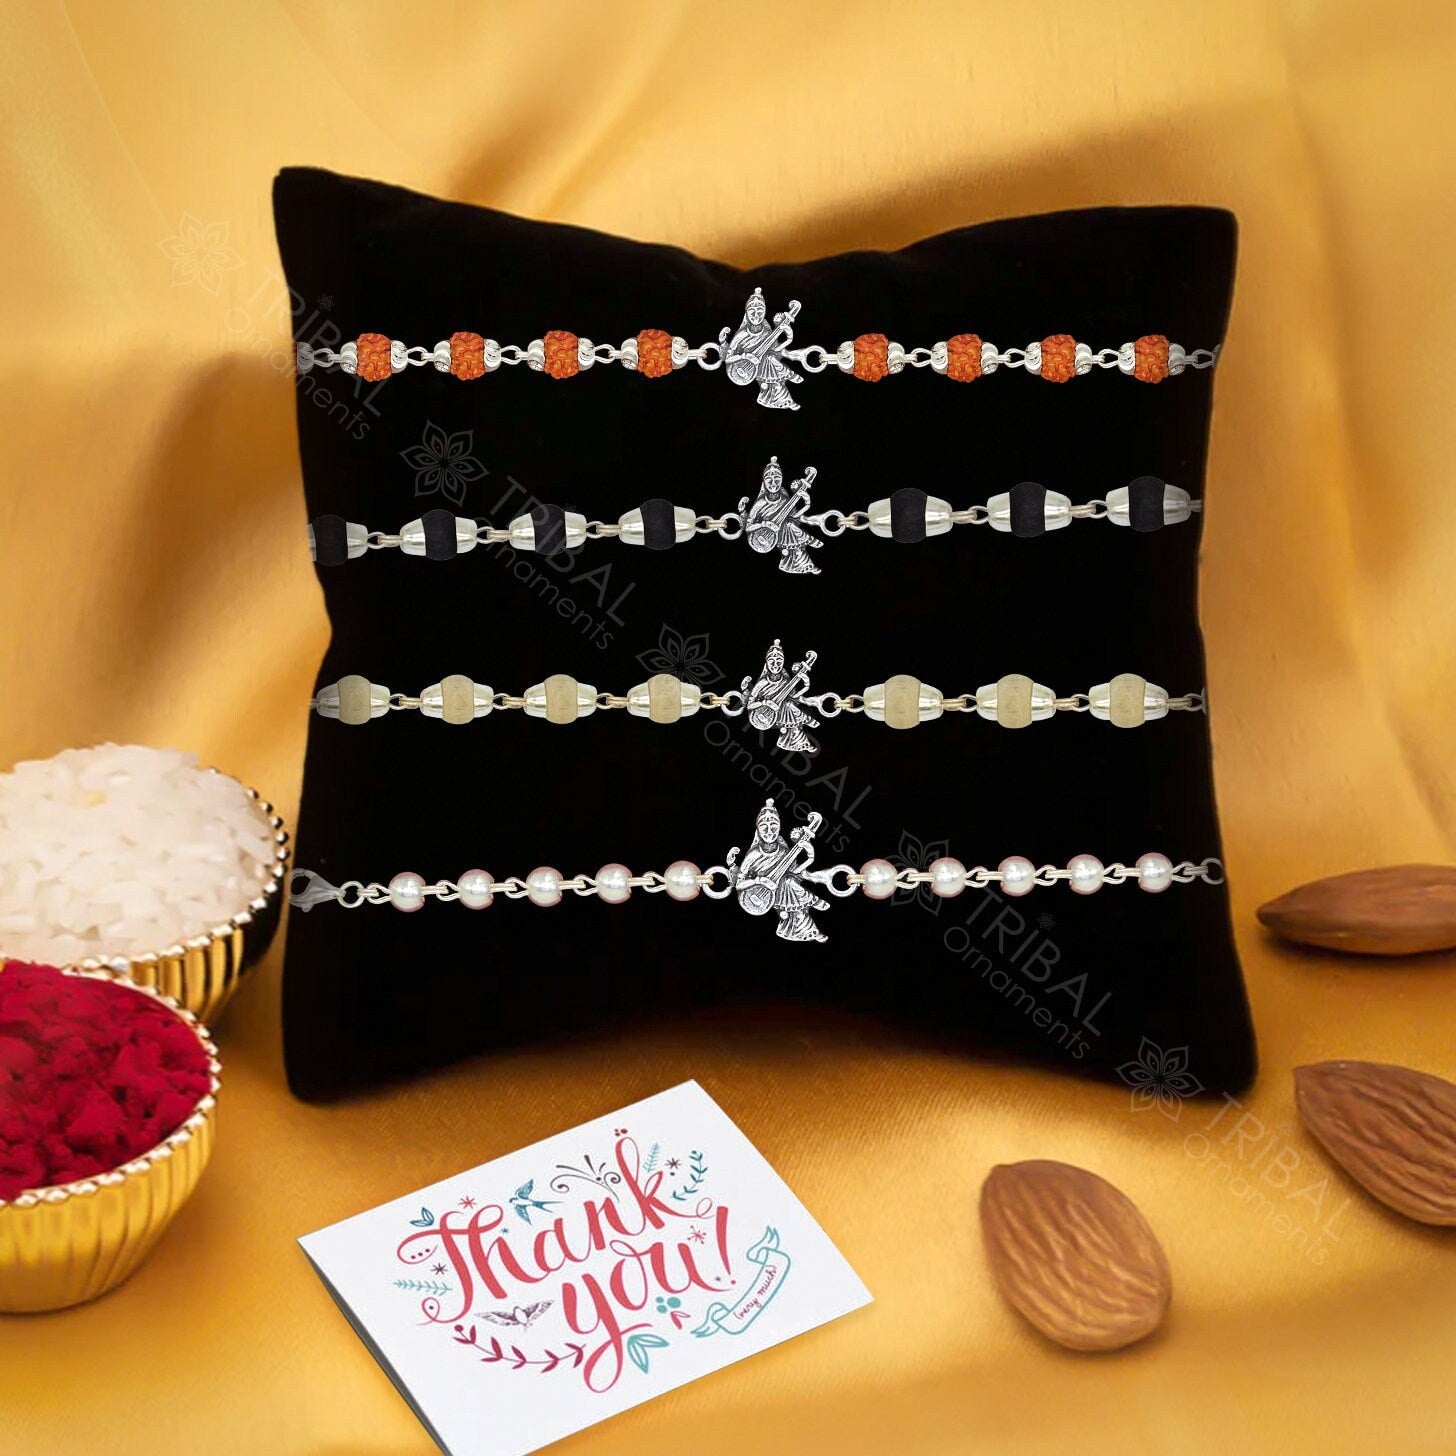 Amazing Goddess Saraswathi design 925 sterling silver Rakhi bracelet in rudraksh/black basil/white basil and silver beaded chain rk279 - TRIBAL ORNAMENTS